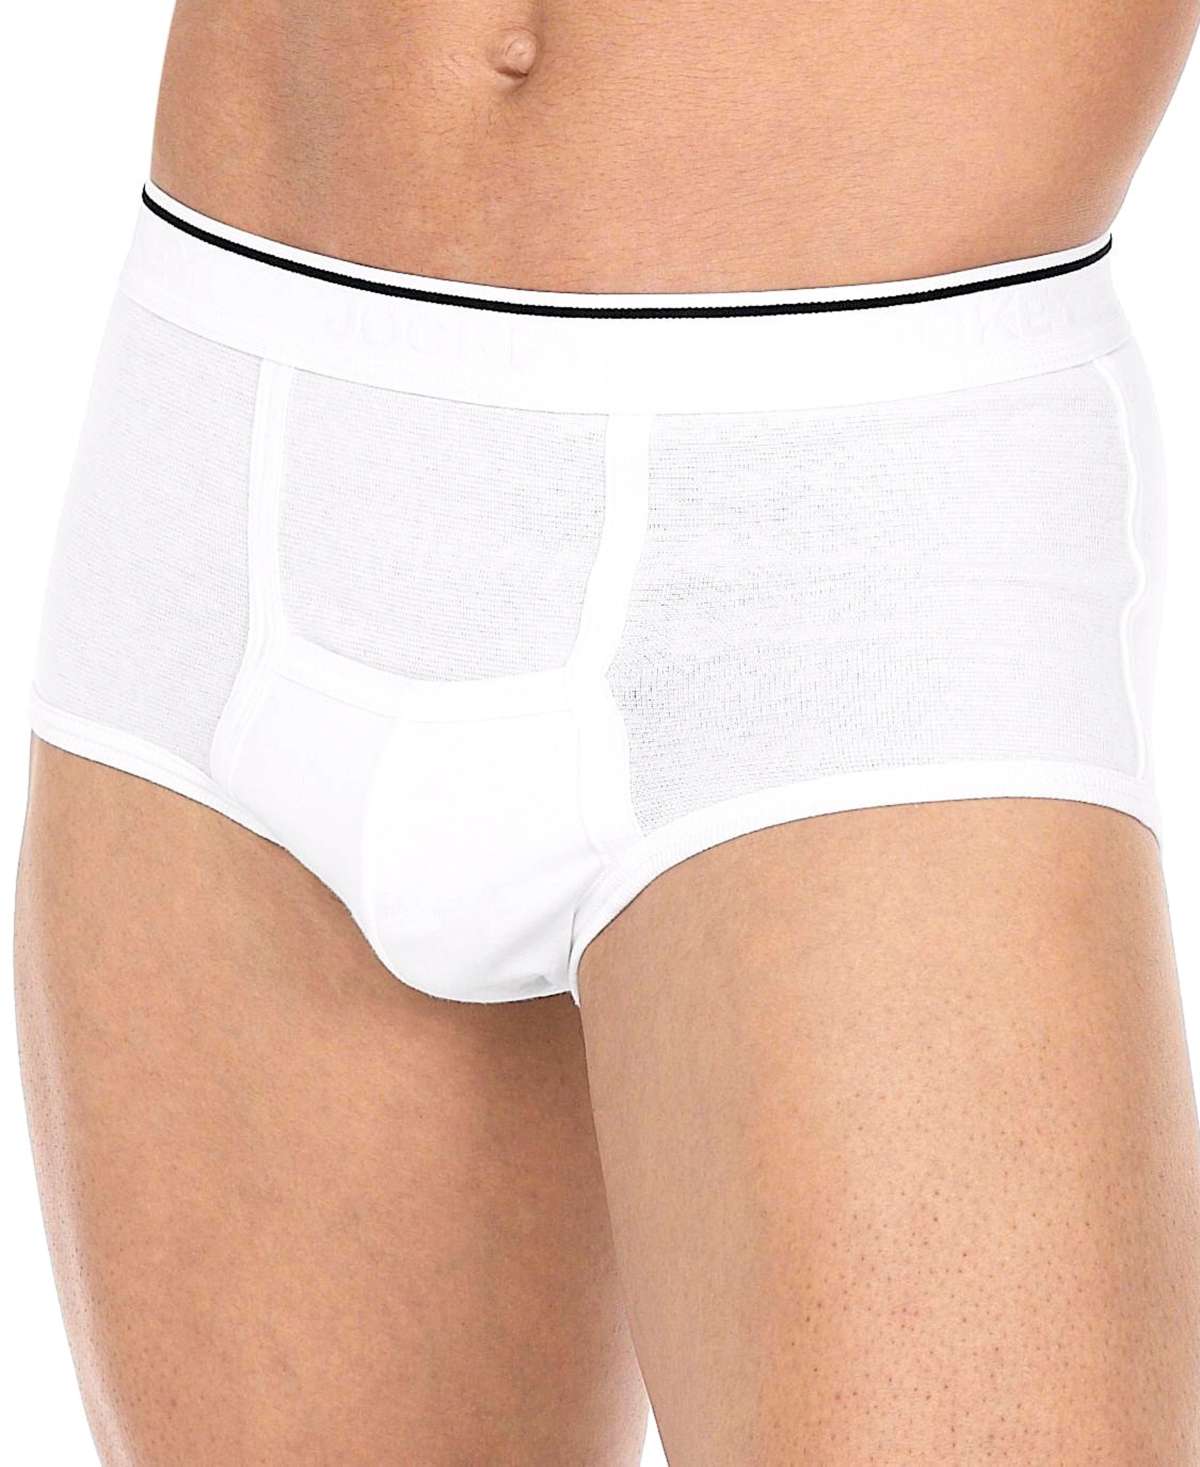 Men's Underwear, Pouch Briefs 3 Pack - White